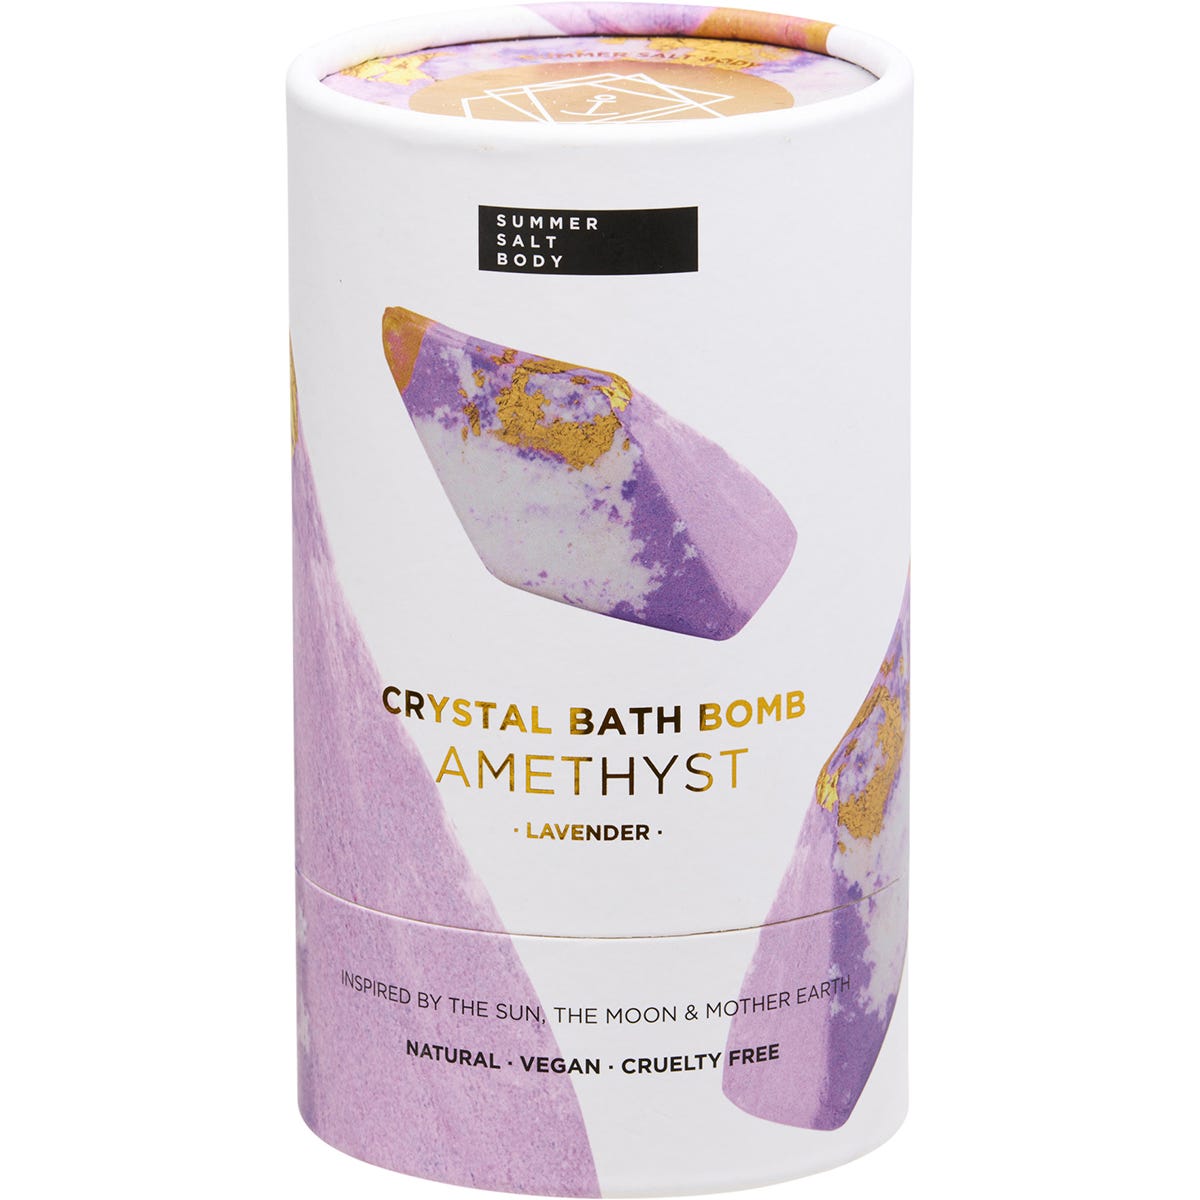 Summer Salt Body Crystal Bath Bomb Amethyst Lavender